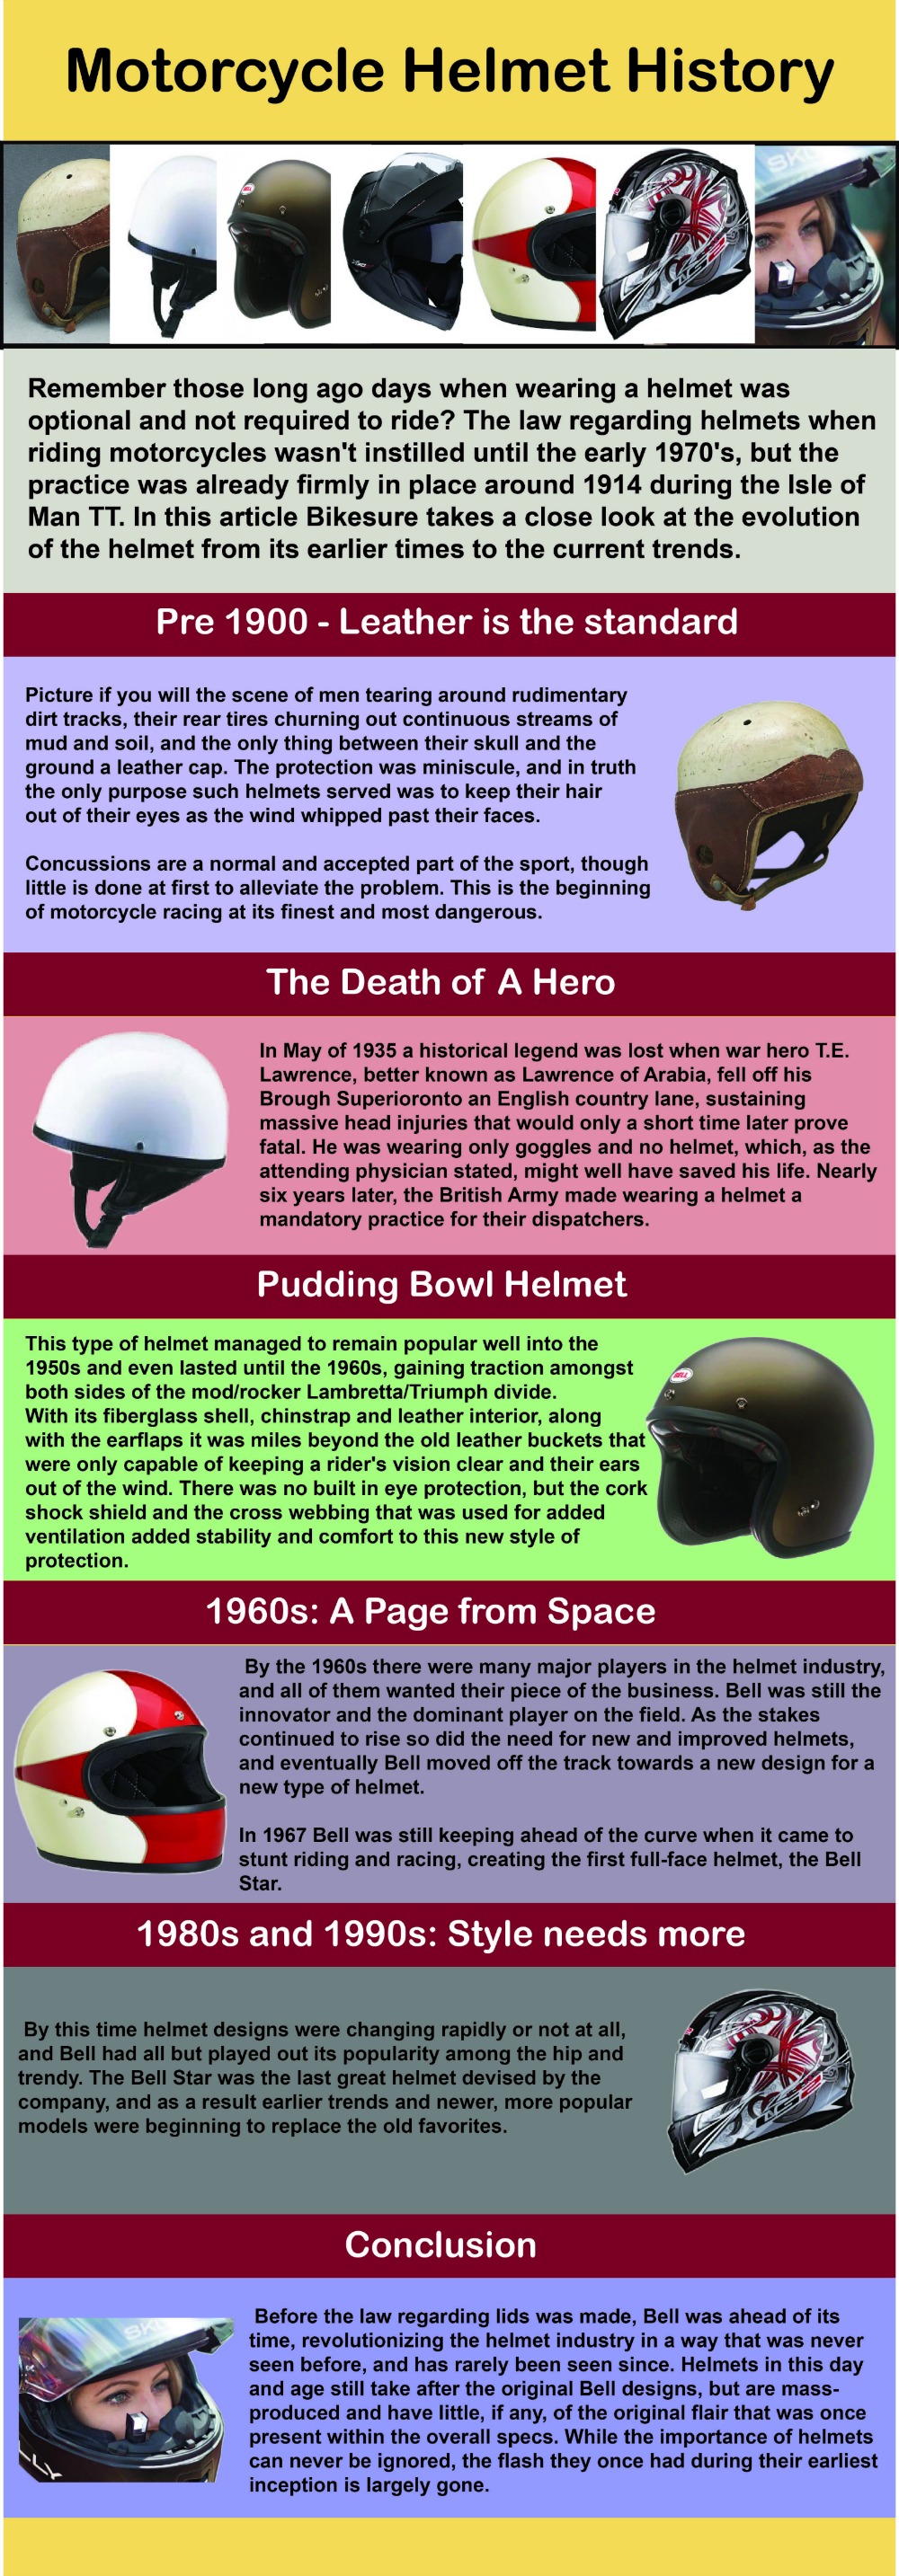 history-of-the-motorcycle-helmet